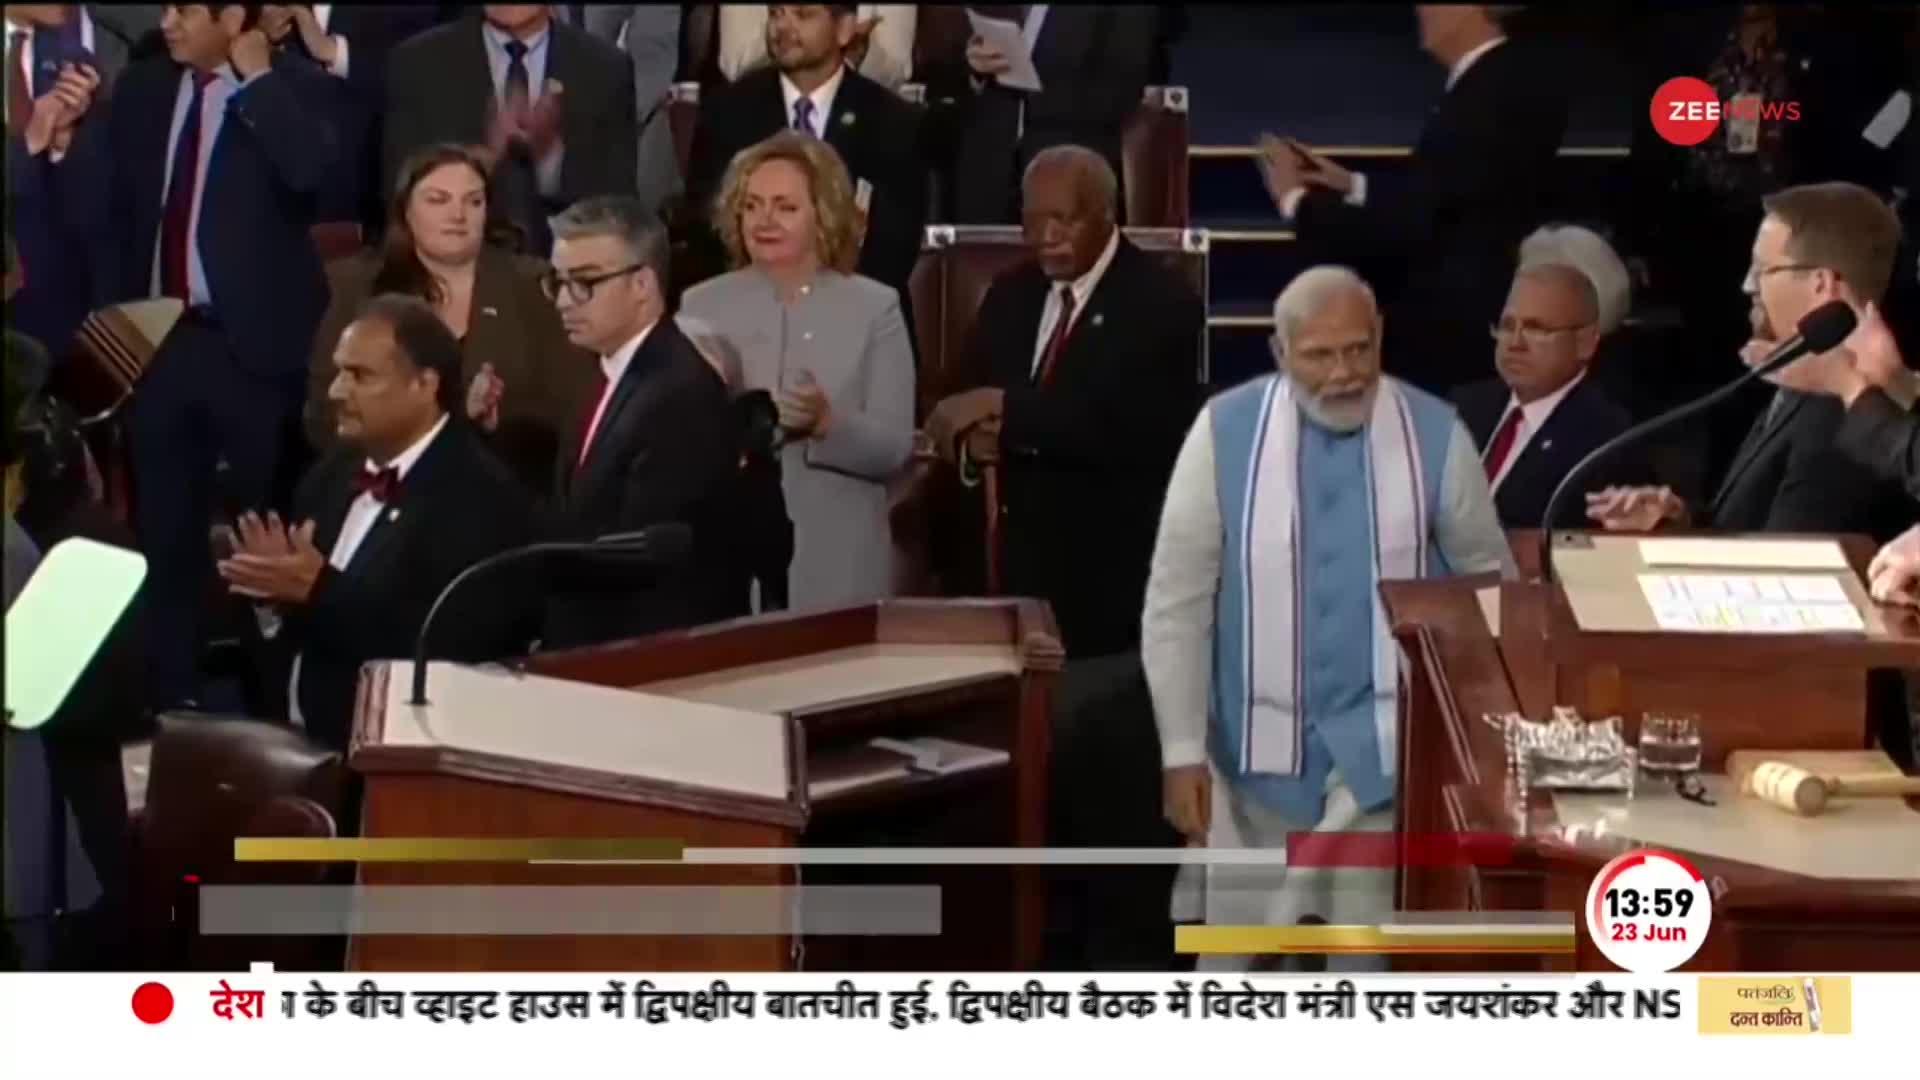 PM Modi US Congress Speech: जब मोदी ने अमेरिकी संसद में की 'भारत की बात', चारों ओर मोदी-मोदी की गूंज